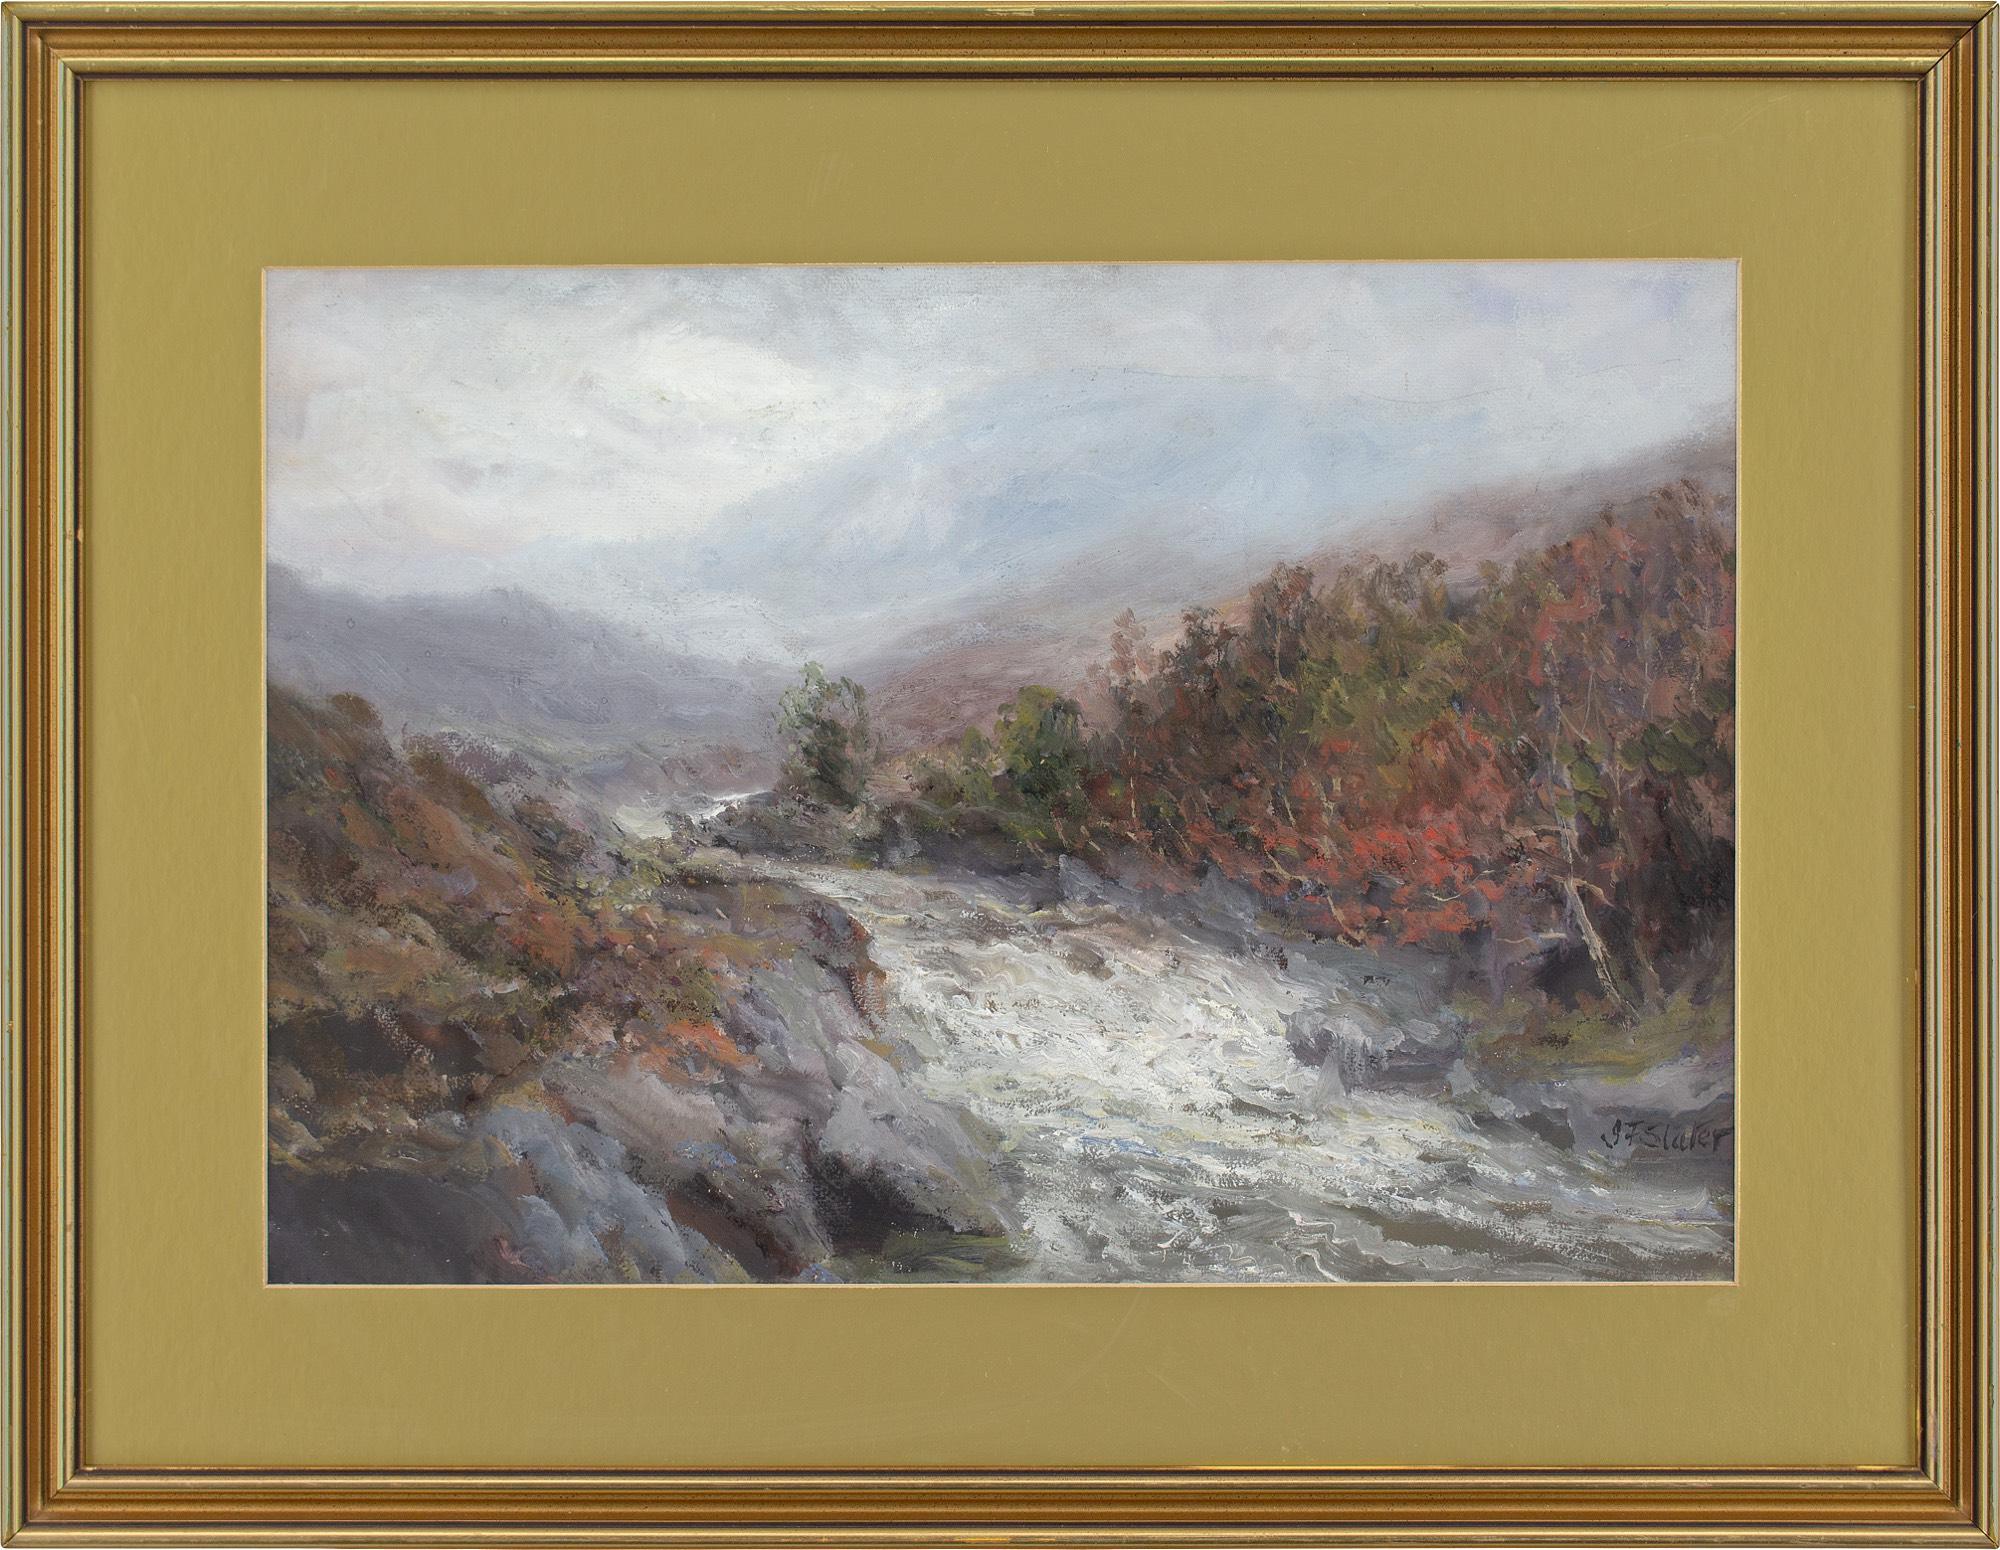 Cette robuste gouache du début du XXe siècle de l'artiste britannique John Falconar Slater (1857-1937) représente des eaux vives rapides au milieu d'un paysage de hautes terres dans le Northumberland, en Angleterre.

L'écume féroce d'une rivière en